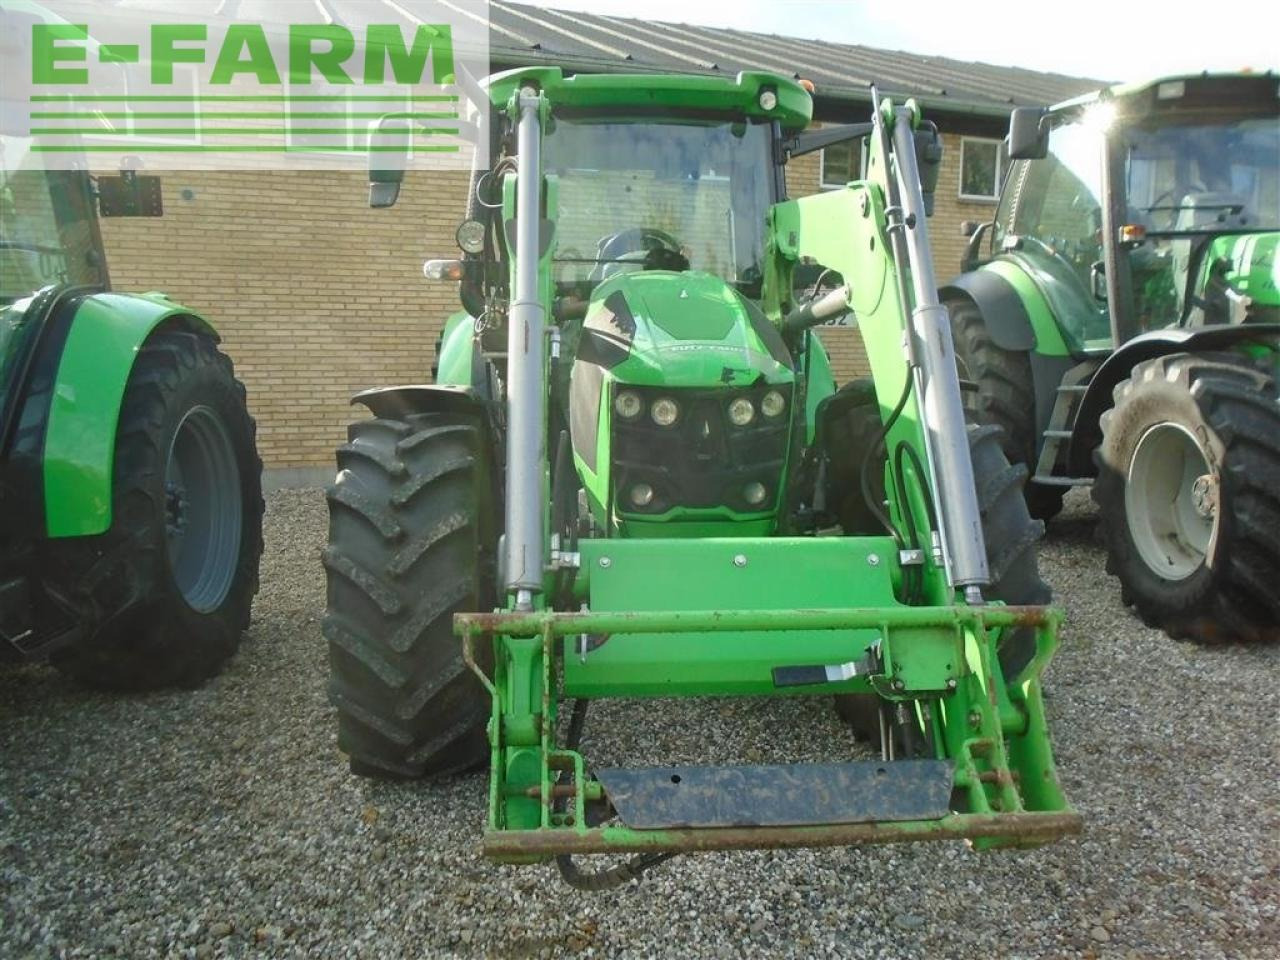 Farm tractor Deutz-Fahr 5110 gs stoll fz20 frontlæsser kun 1197 timer: picture 2